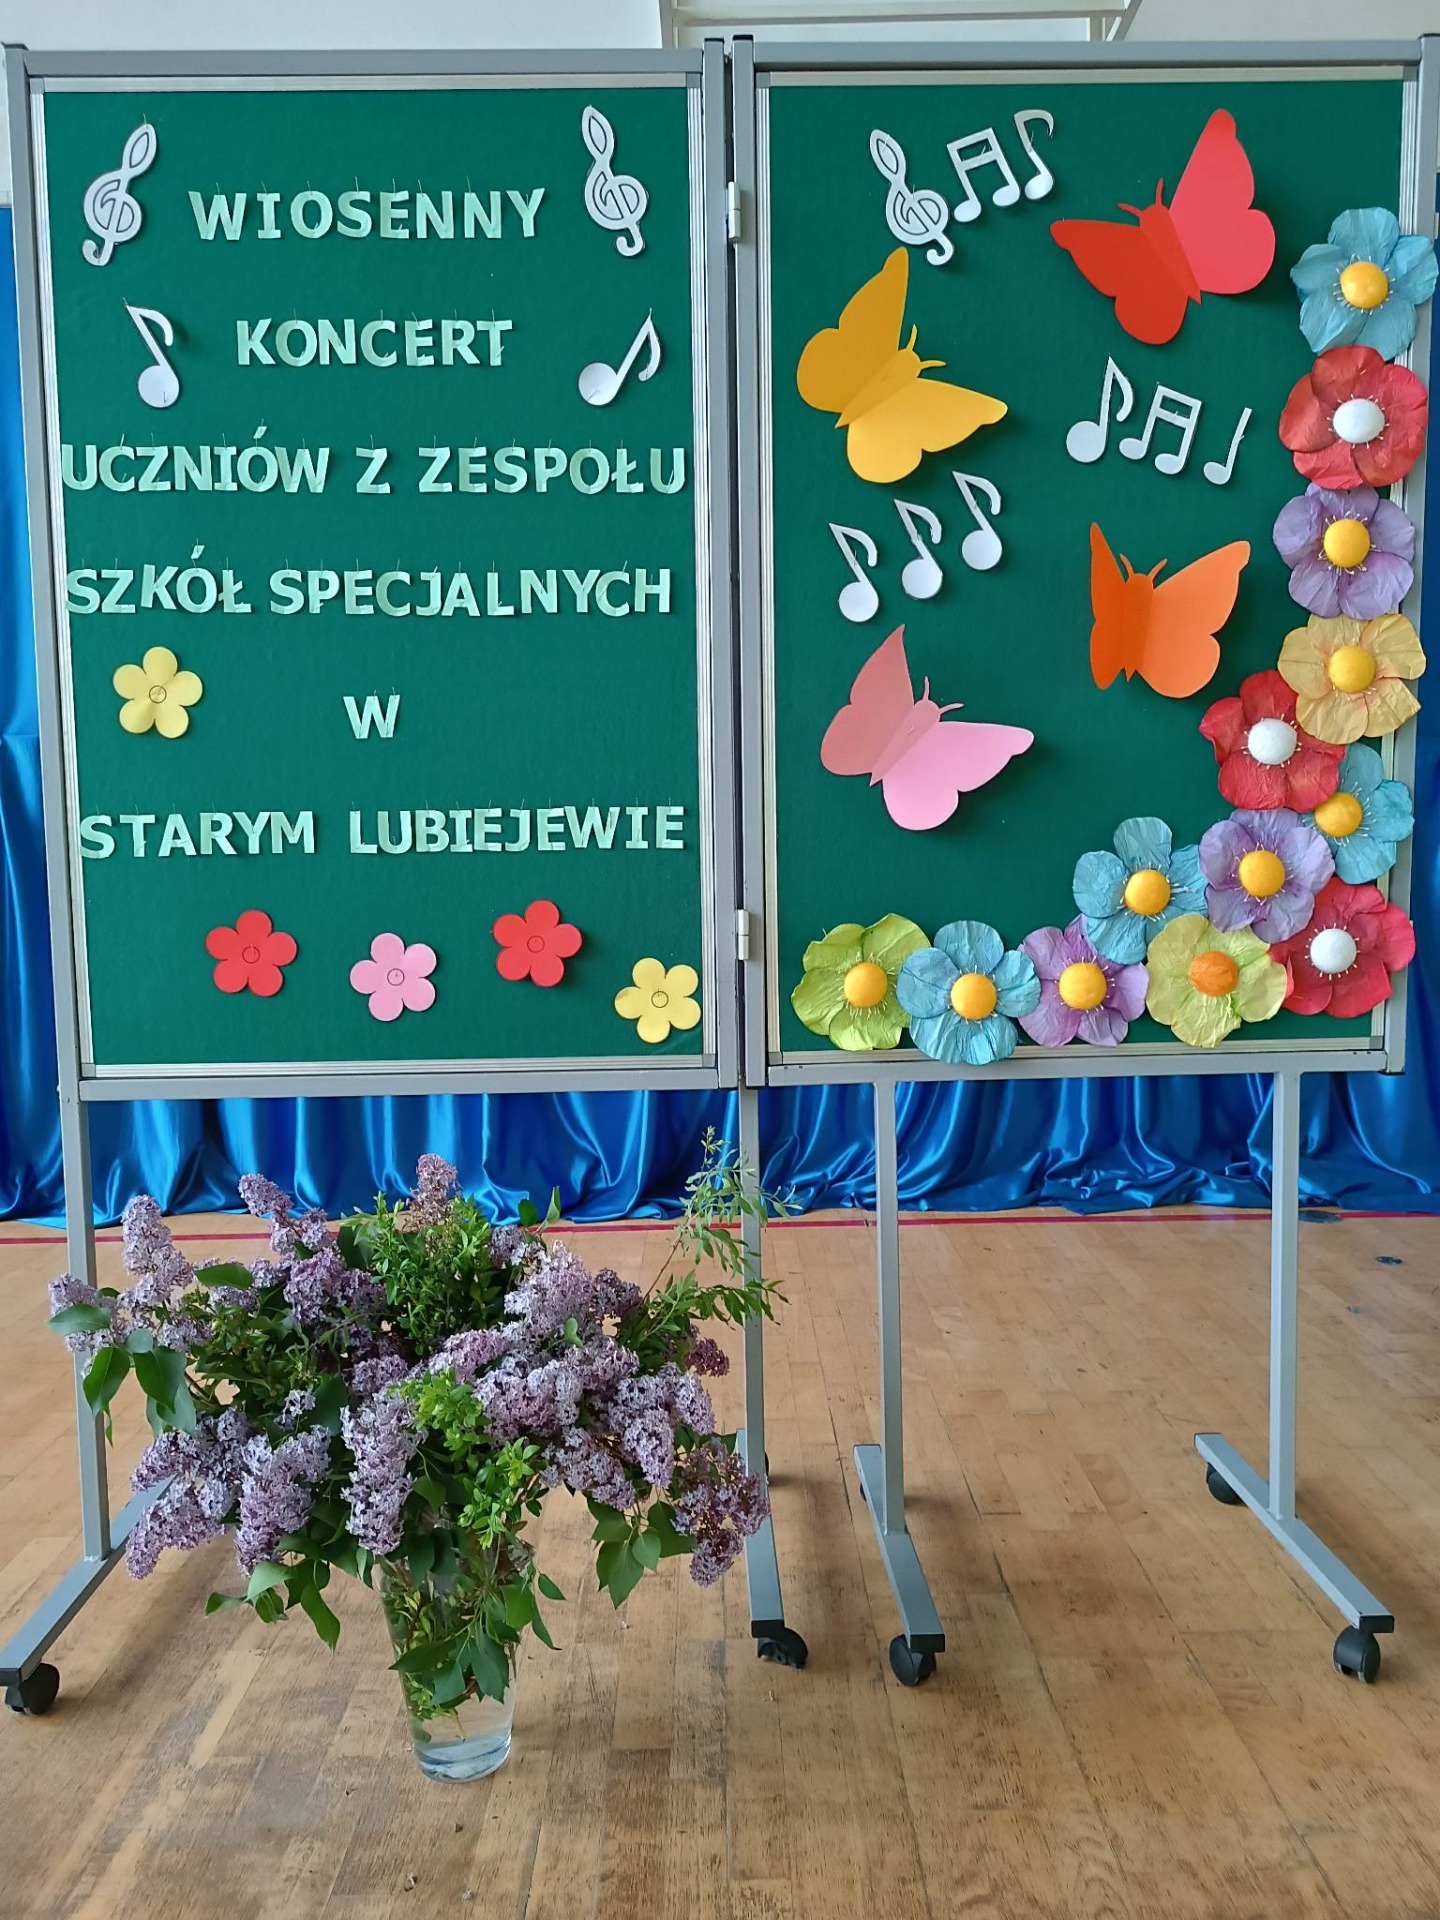 Gazetka tematyczna z napisem "Wiosenny koncert uczniów z Zespołu Szkół Specjalnych w Starym Lubiejewie